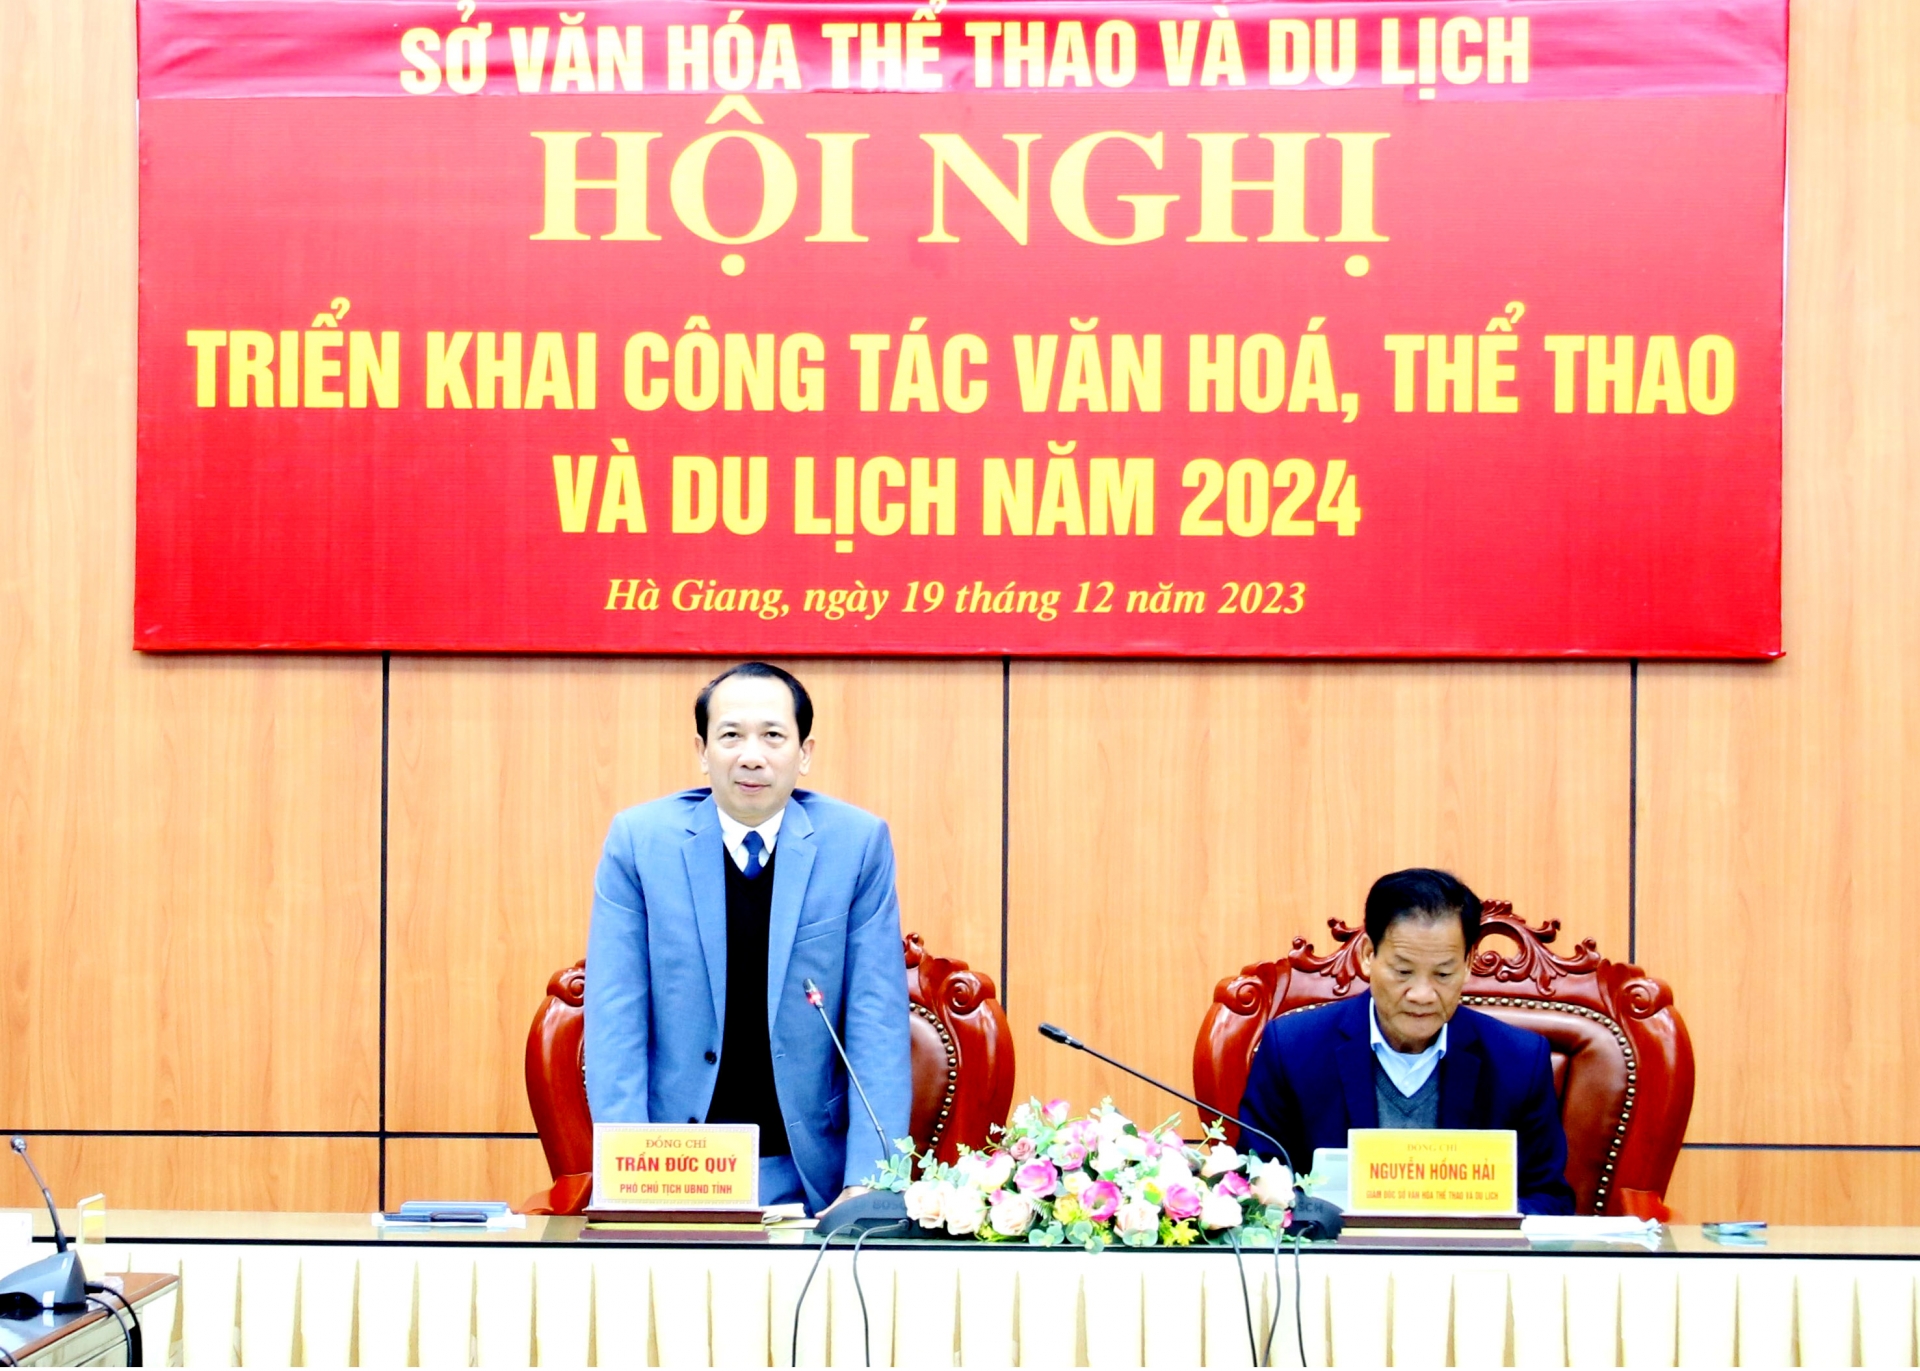 Hà Giang: Hội nghị triển khai công tác Văn hóa, thể thao và du lịch năm 2024 - Ảnh 2.